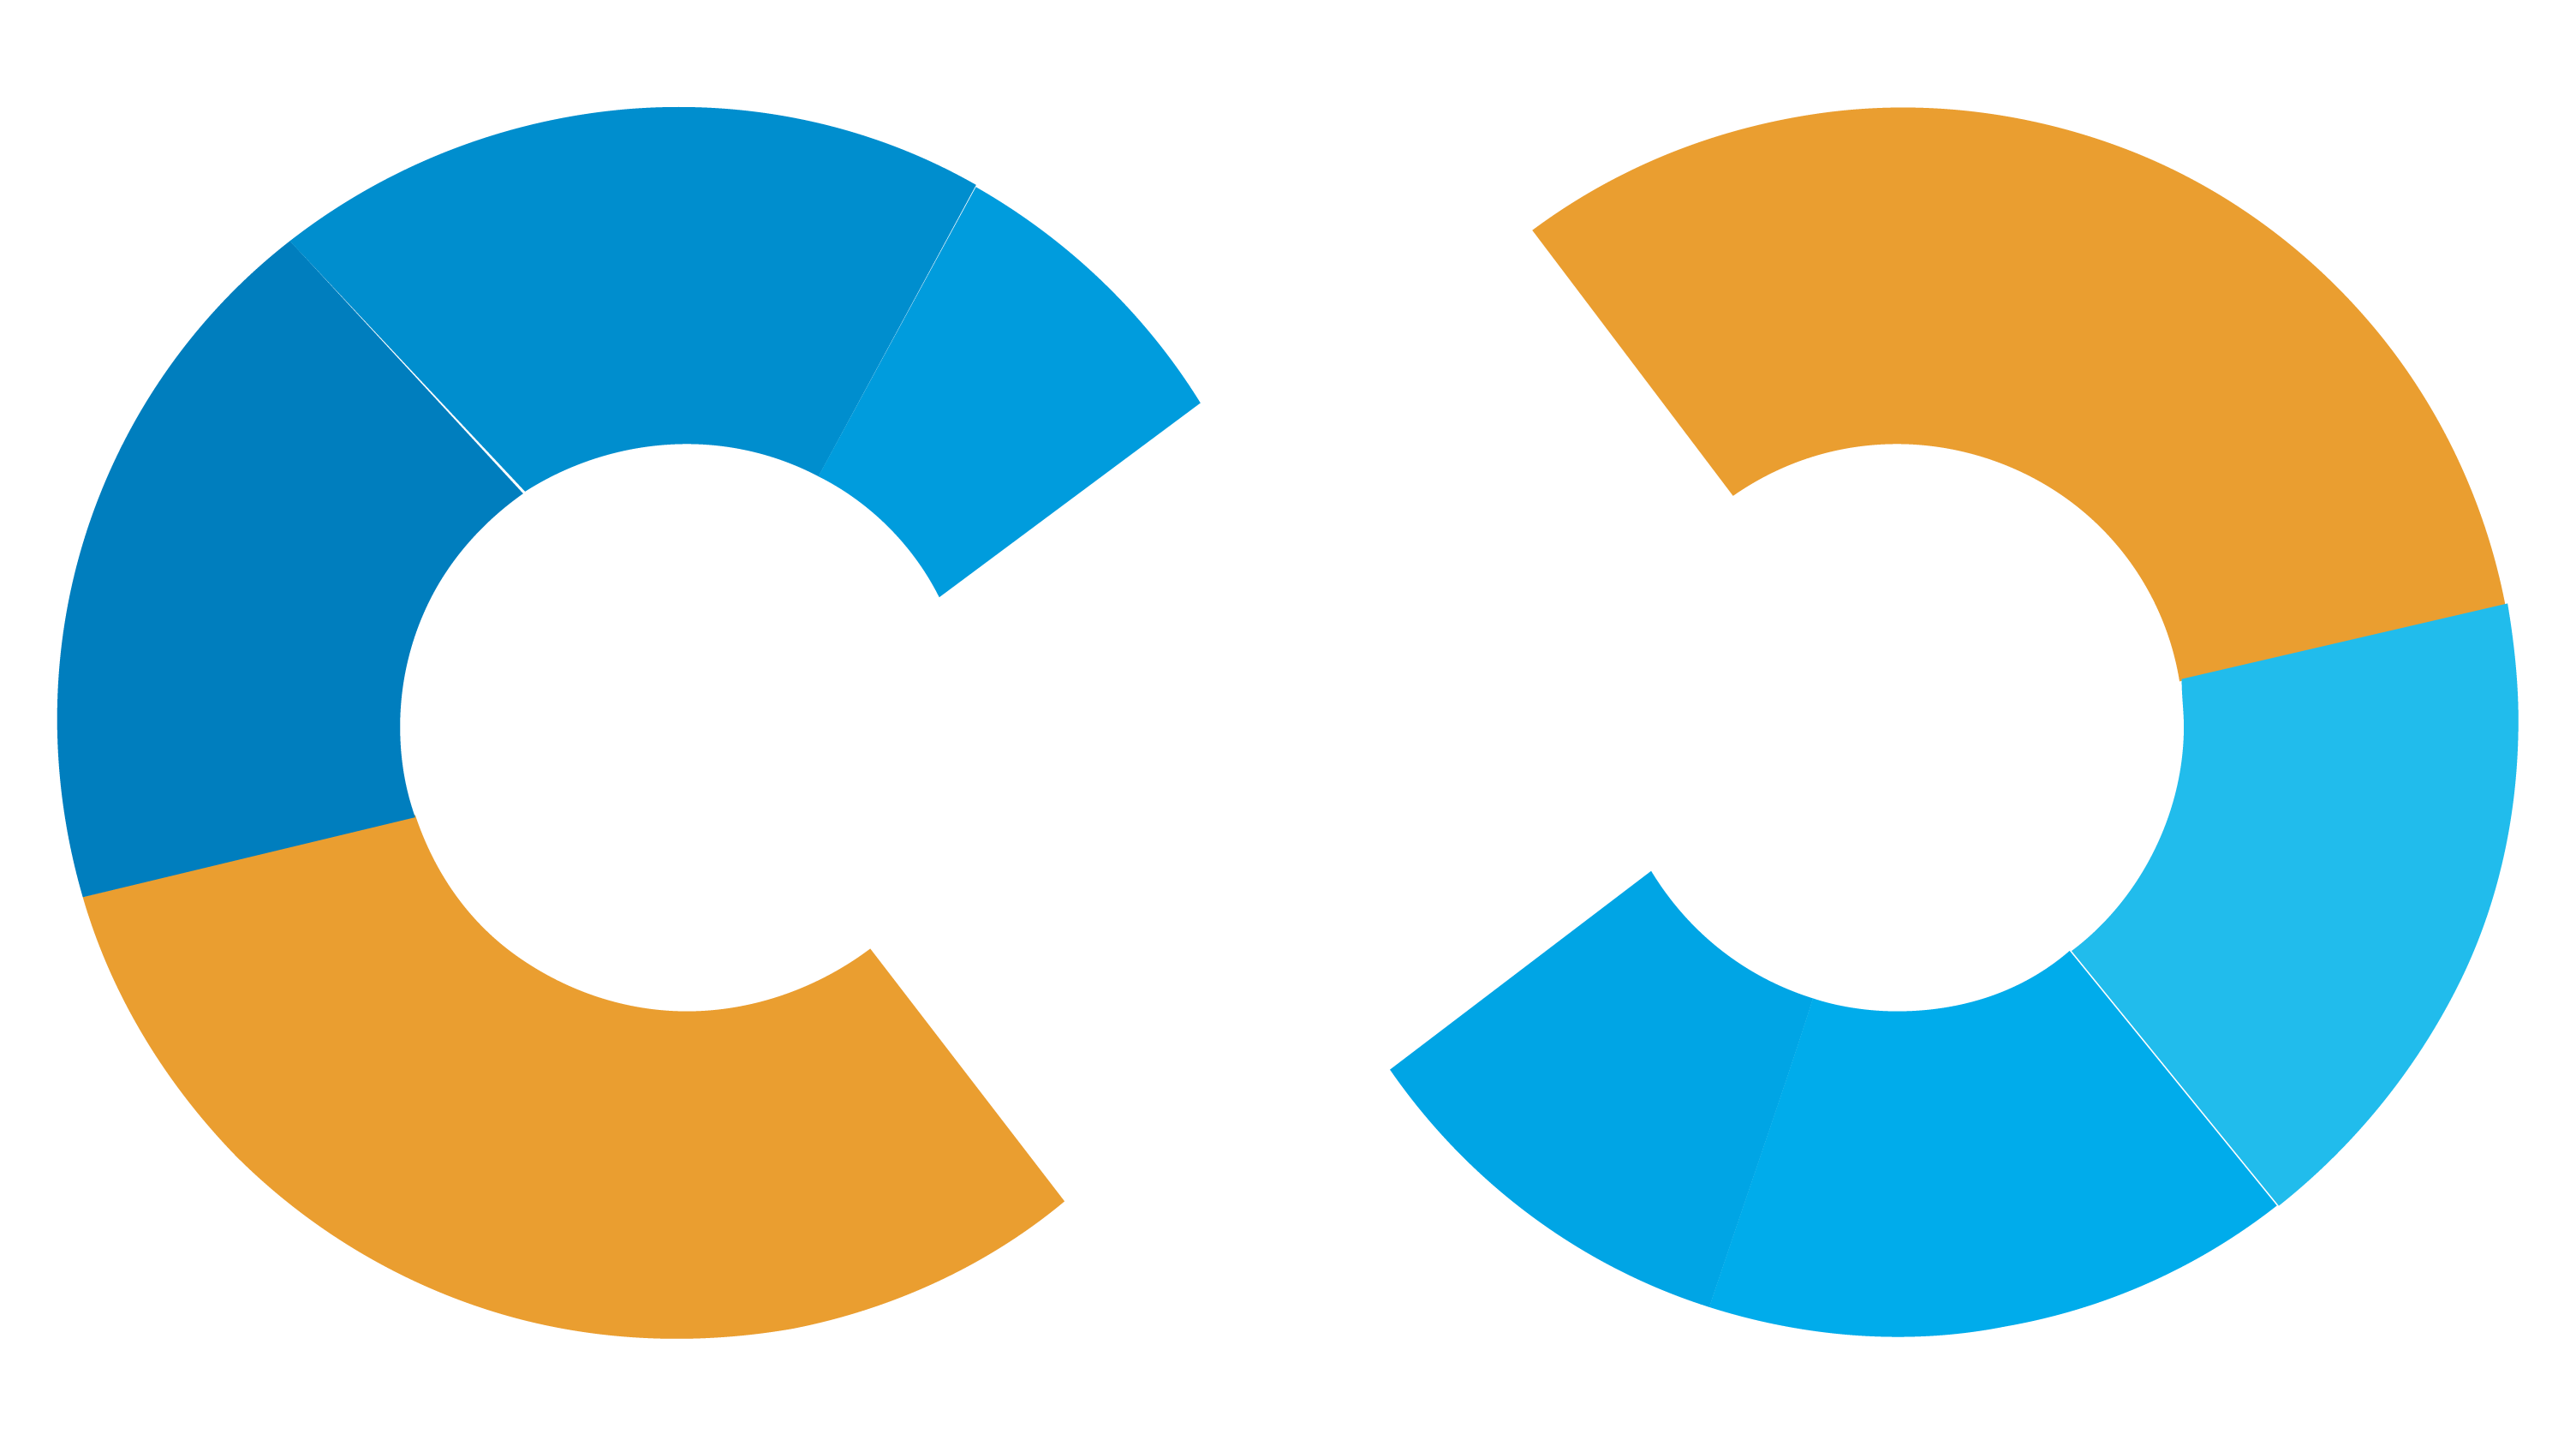 Nethermind logo